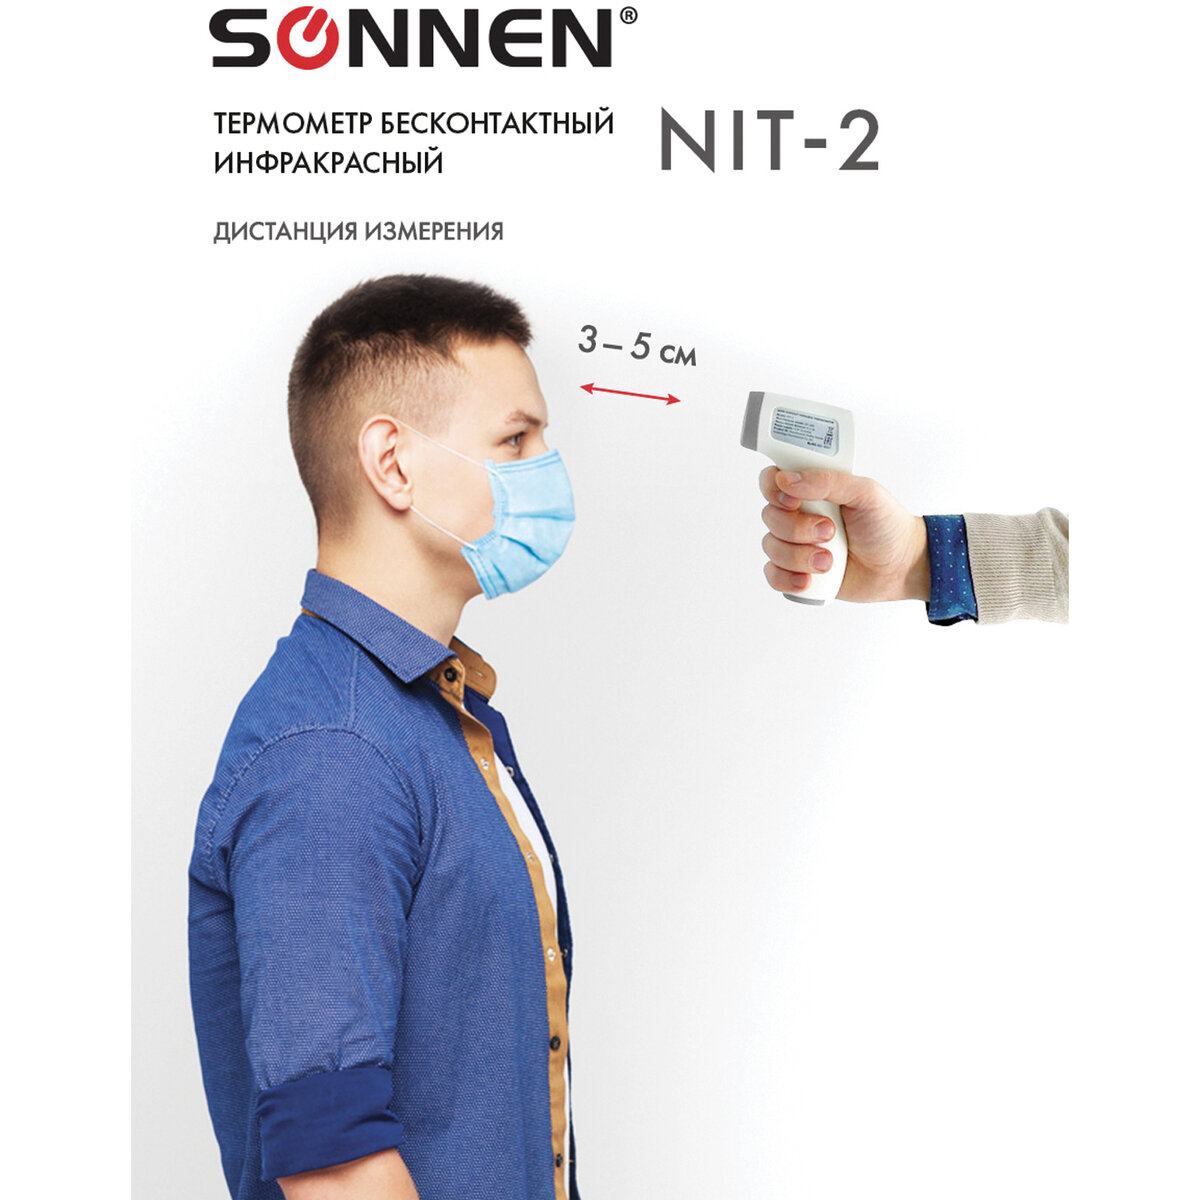 Термометр Sonnen бесконтактный инфракрасный NIT-2 GP-300 электронный - фото 8